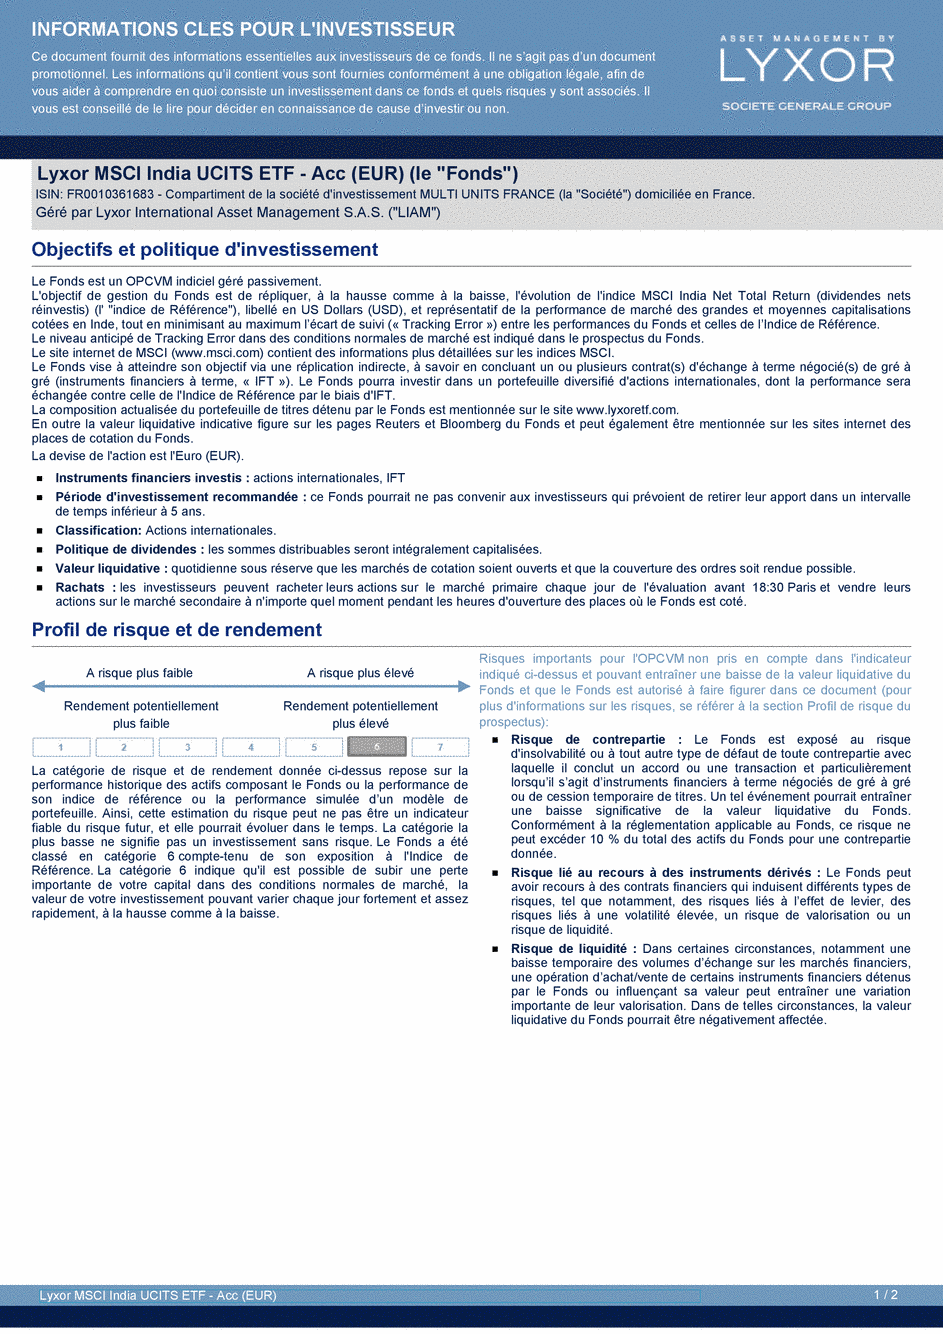 DICI Lyxor MSCI India UCITS ETF - Acc (EUR) - 19/02/2021 - Français